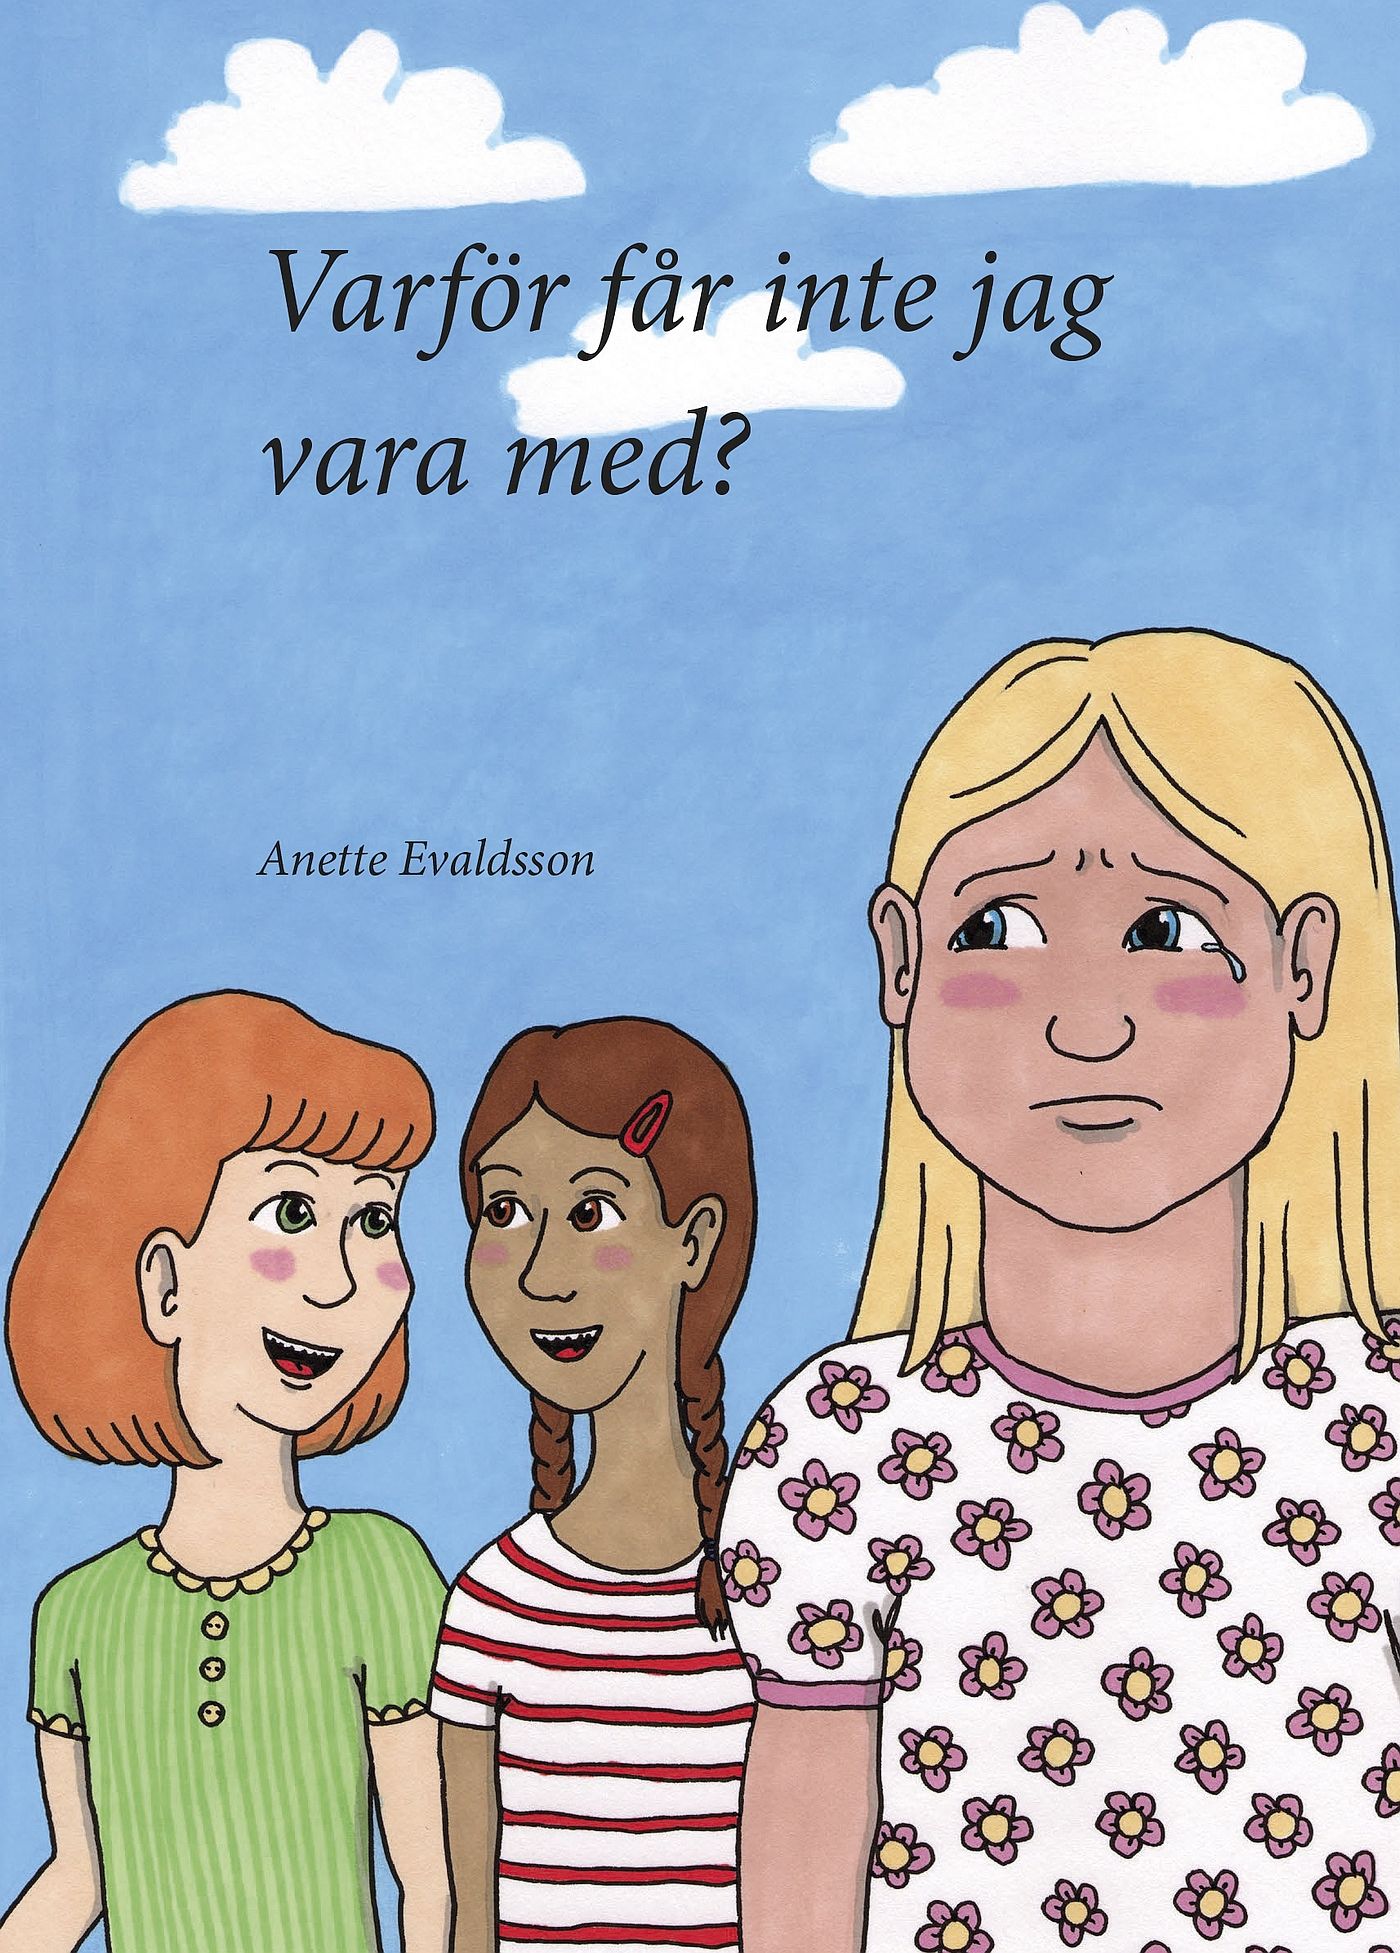 Varför får inte jag vara med?, e-bok av Anette Evaldsson